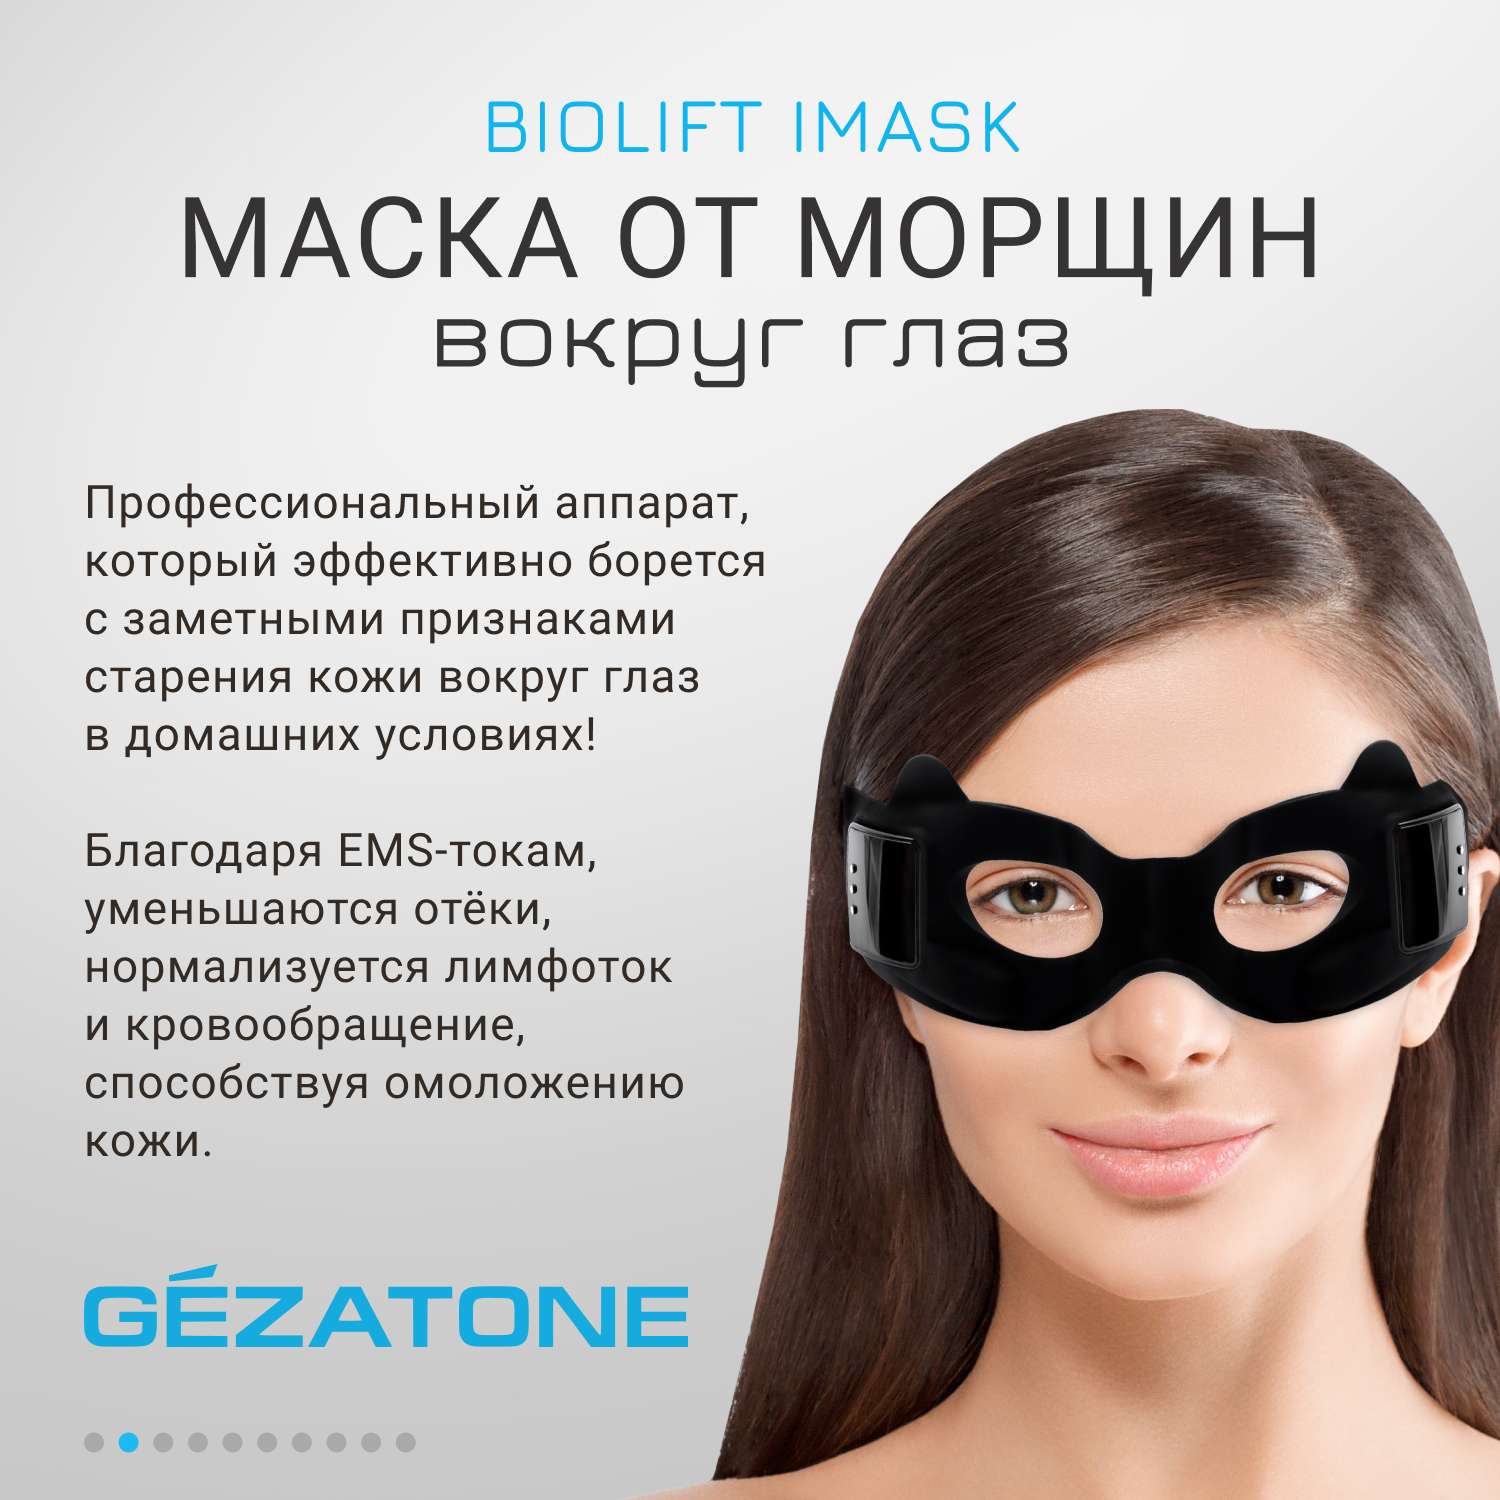 Гелевая маска-очки GELEX